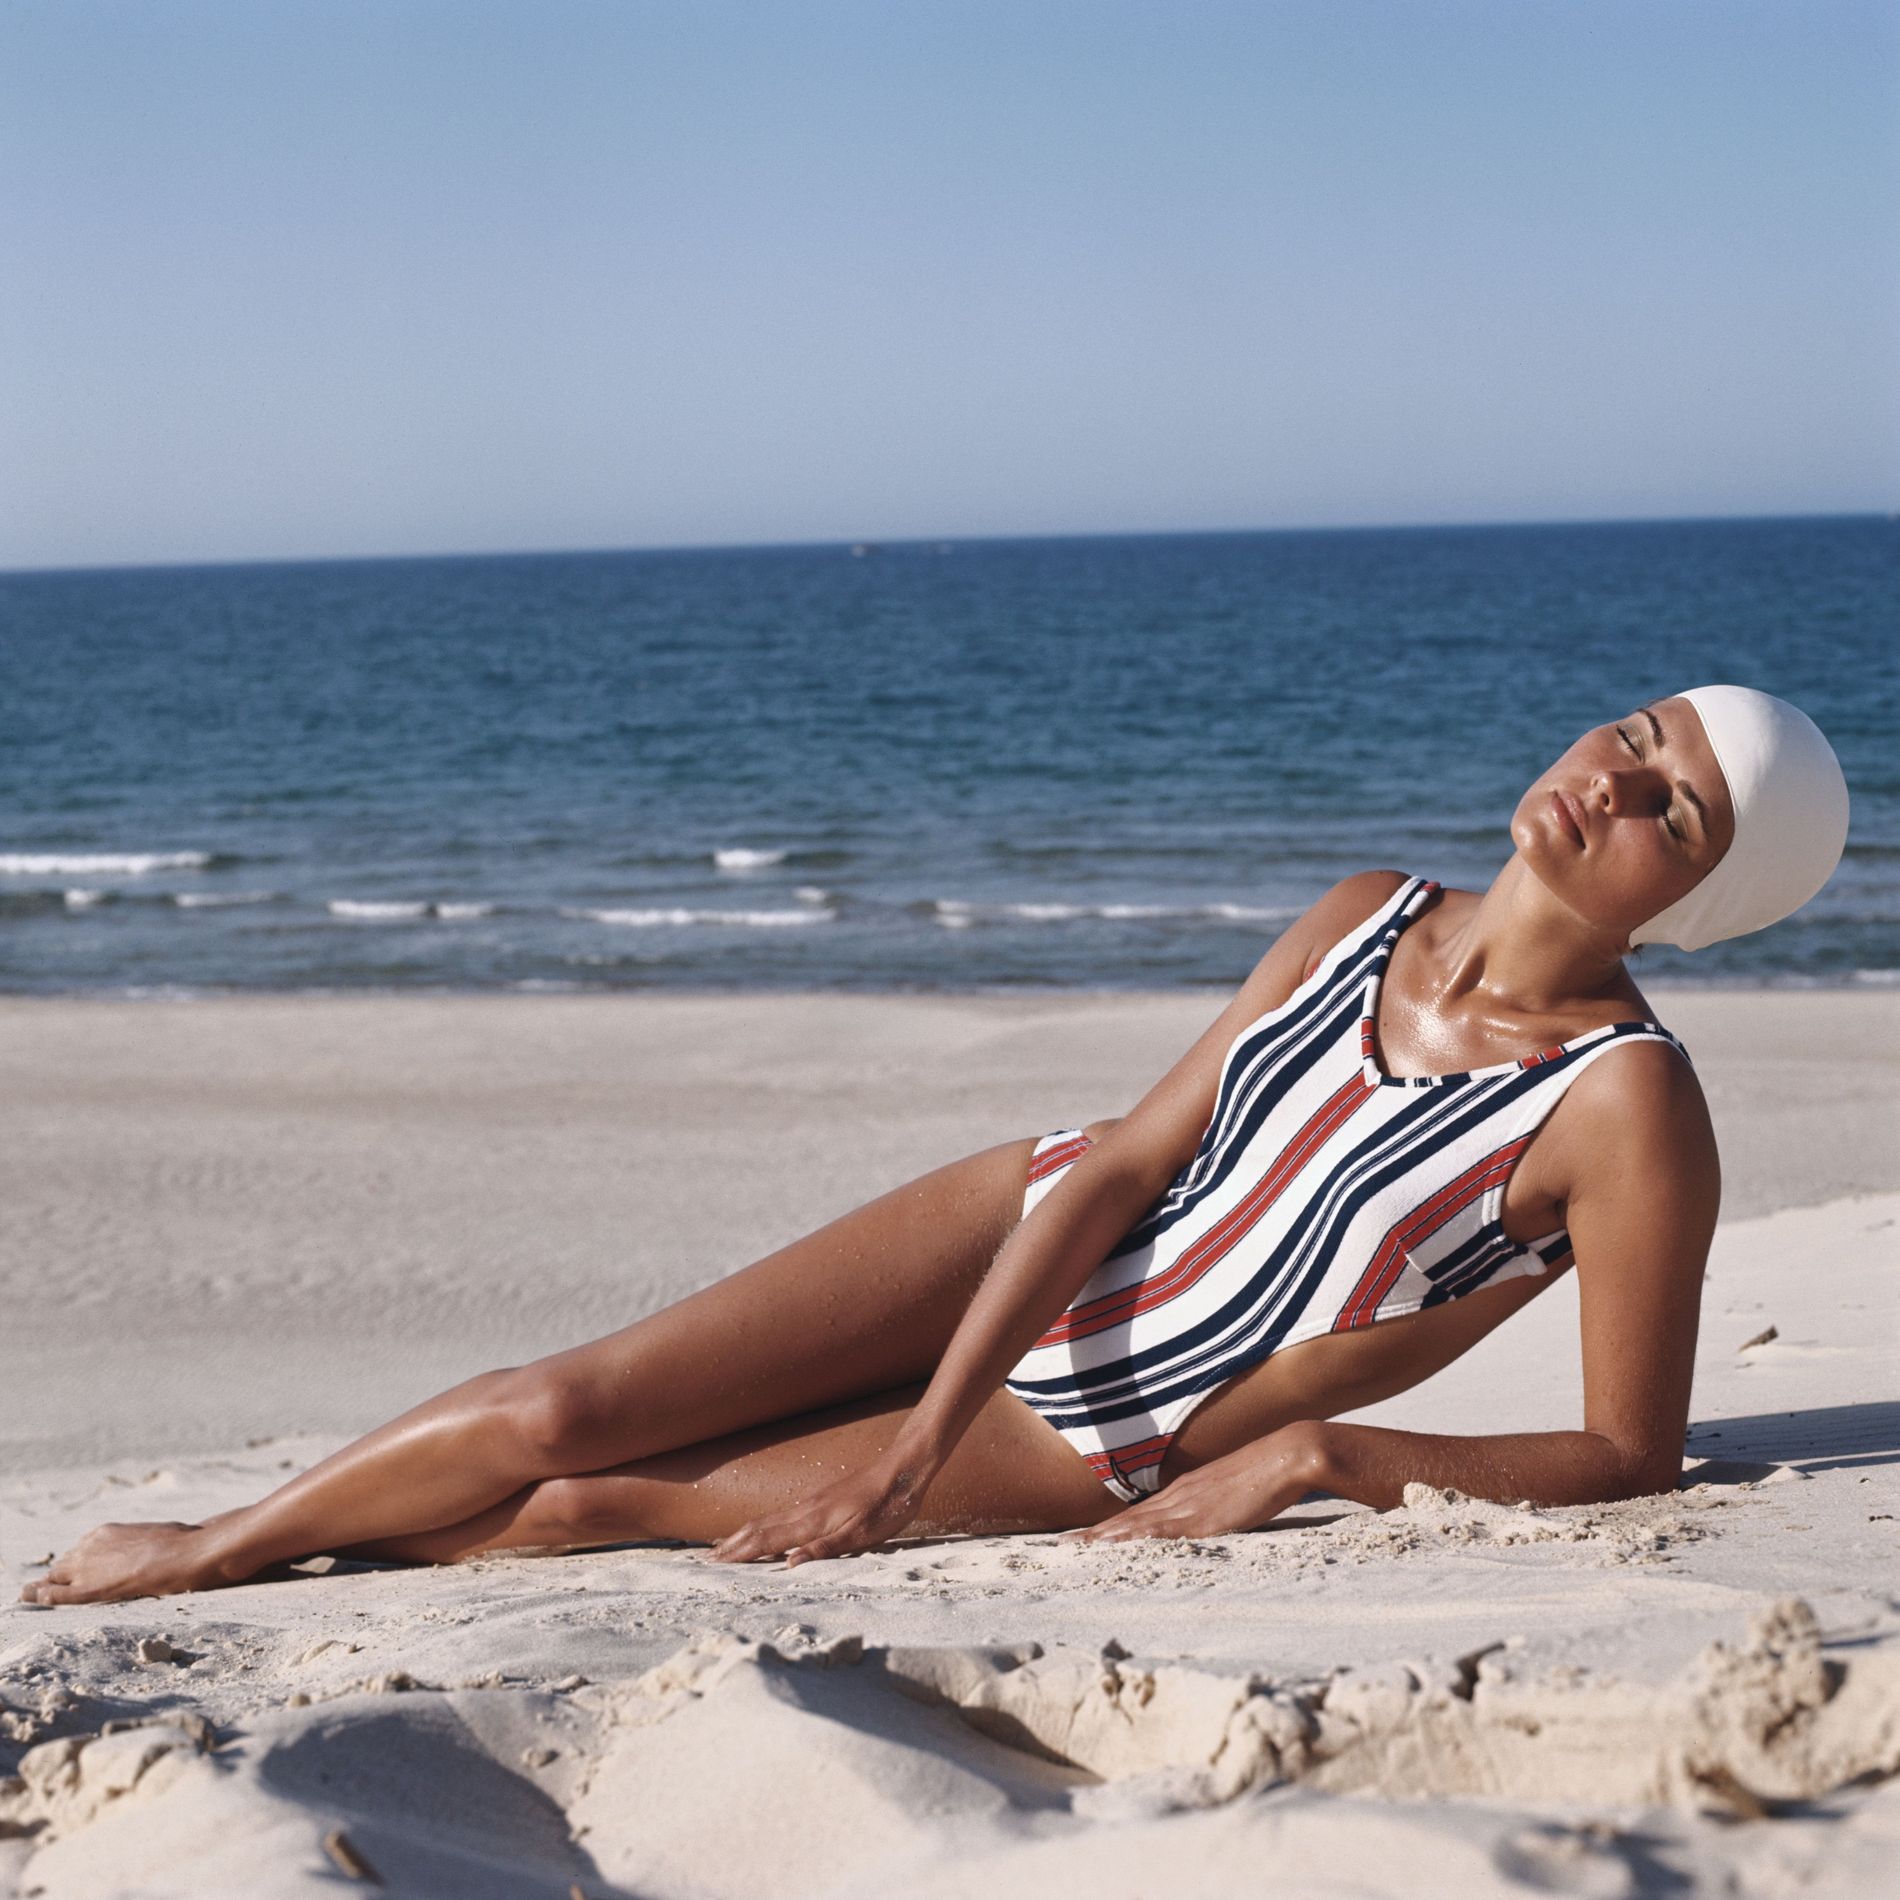 Model on beach wearing striped swimwear